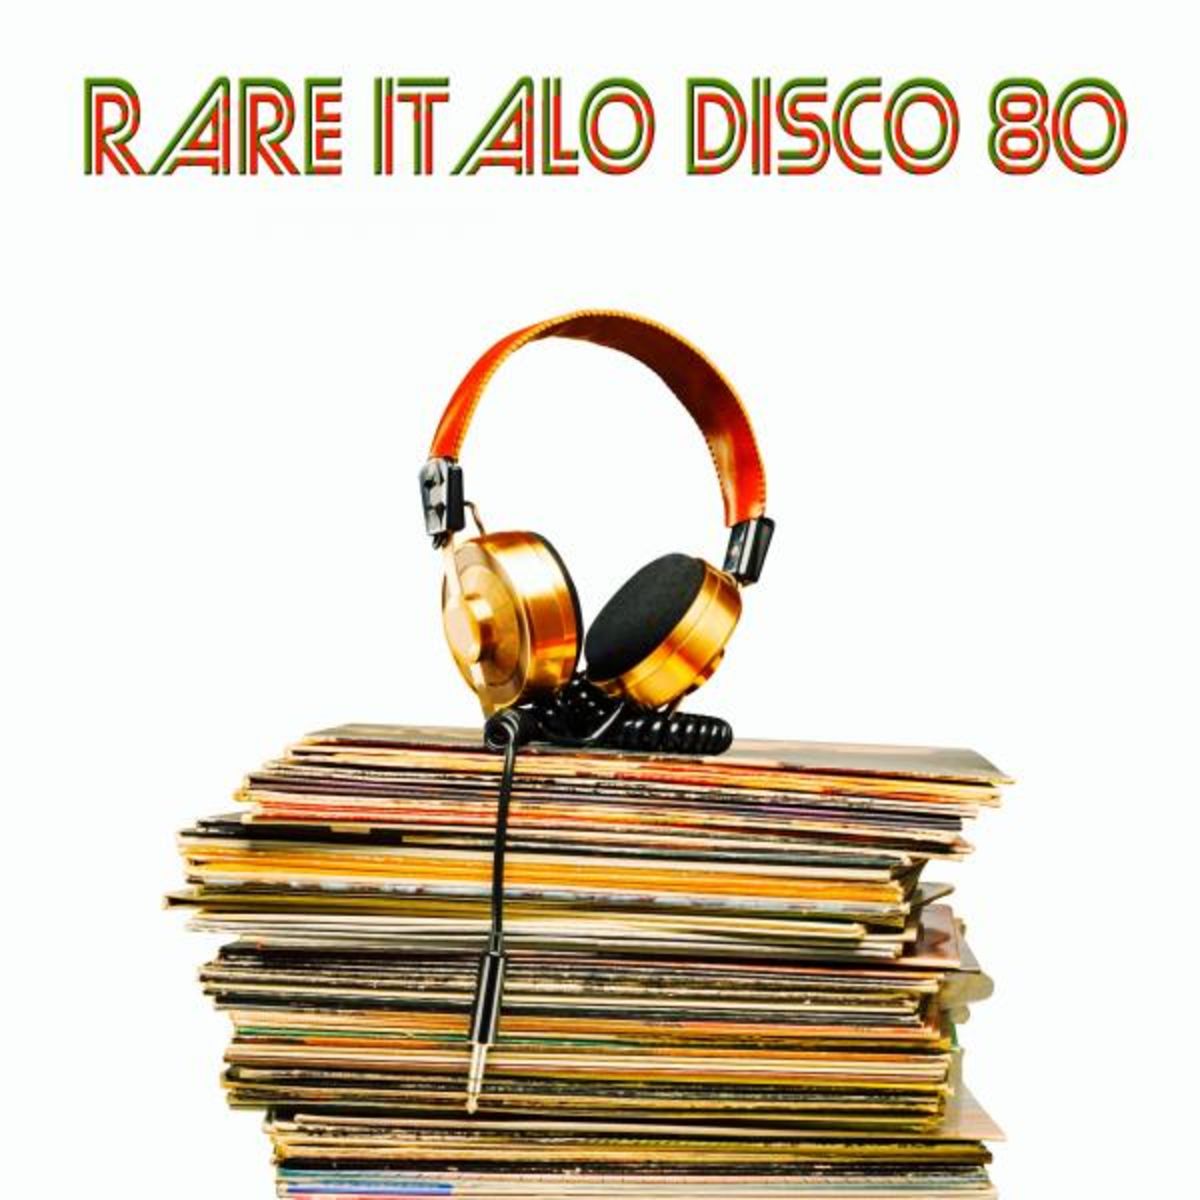 Rare Italo Disco 80 (Original Rare Tracks) (2015 · FLAC+MP3)